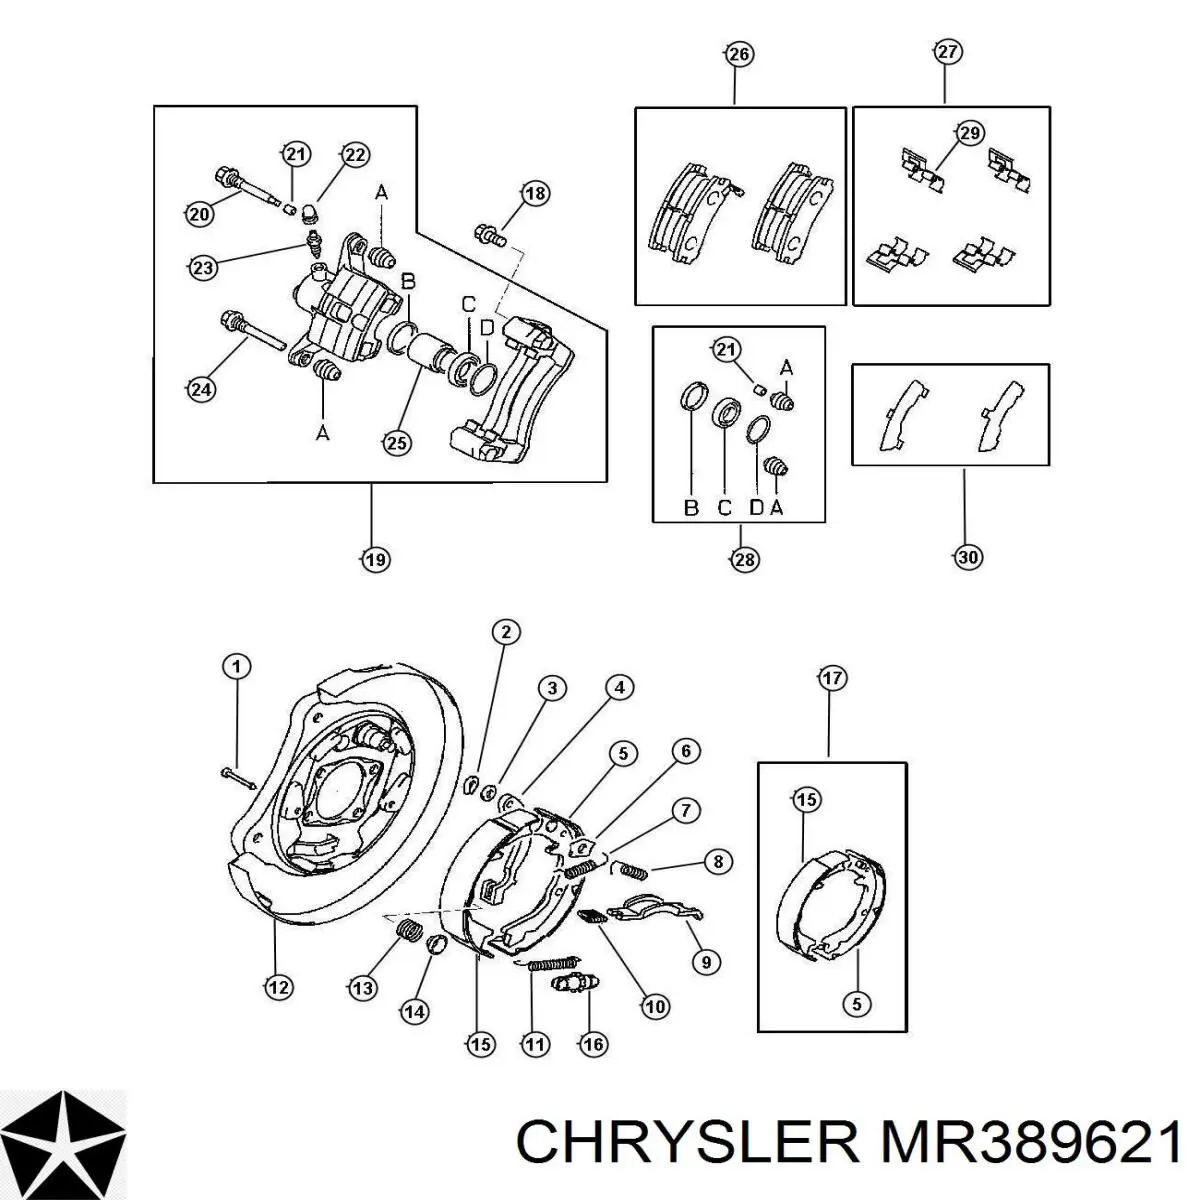 MR389621 Chrysler